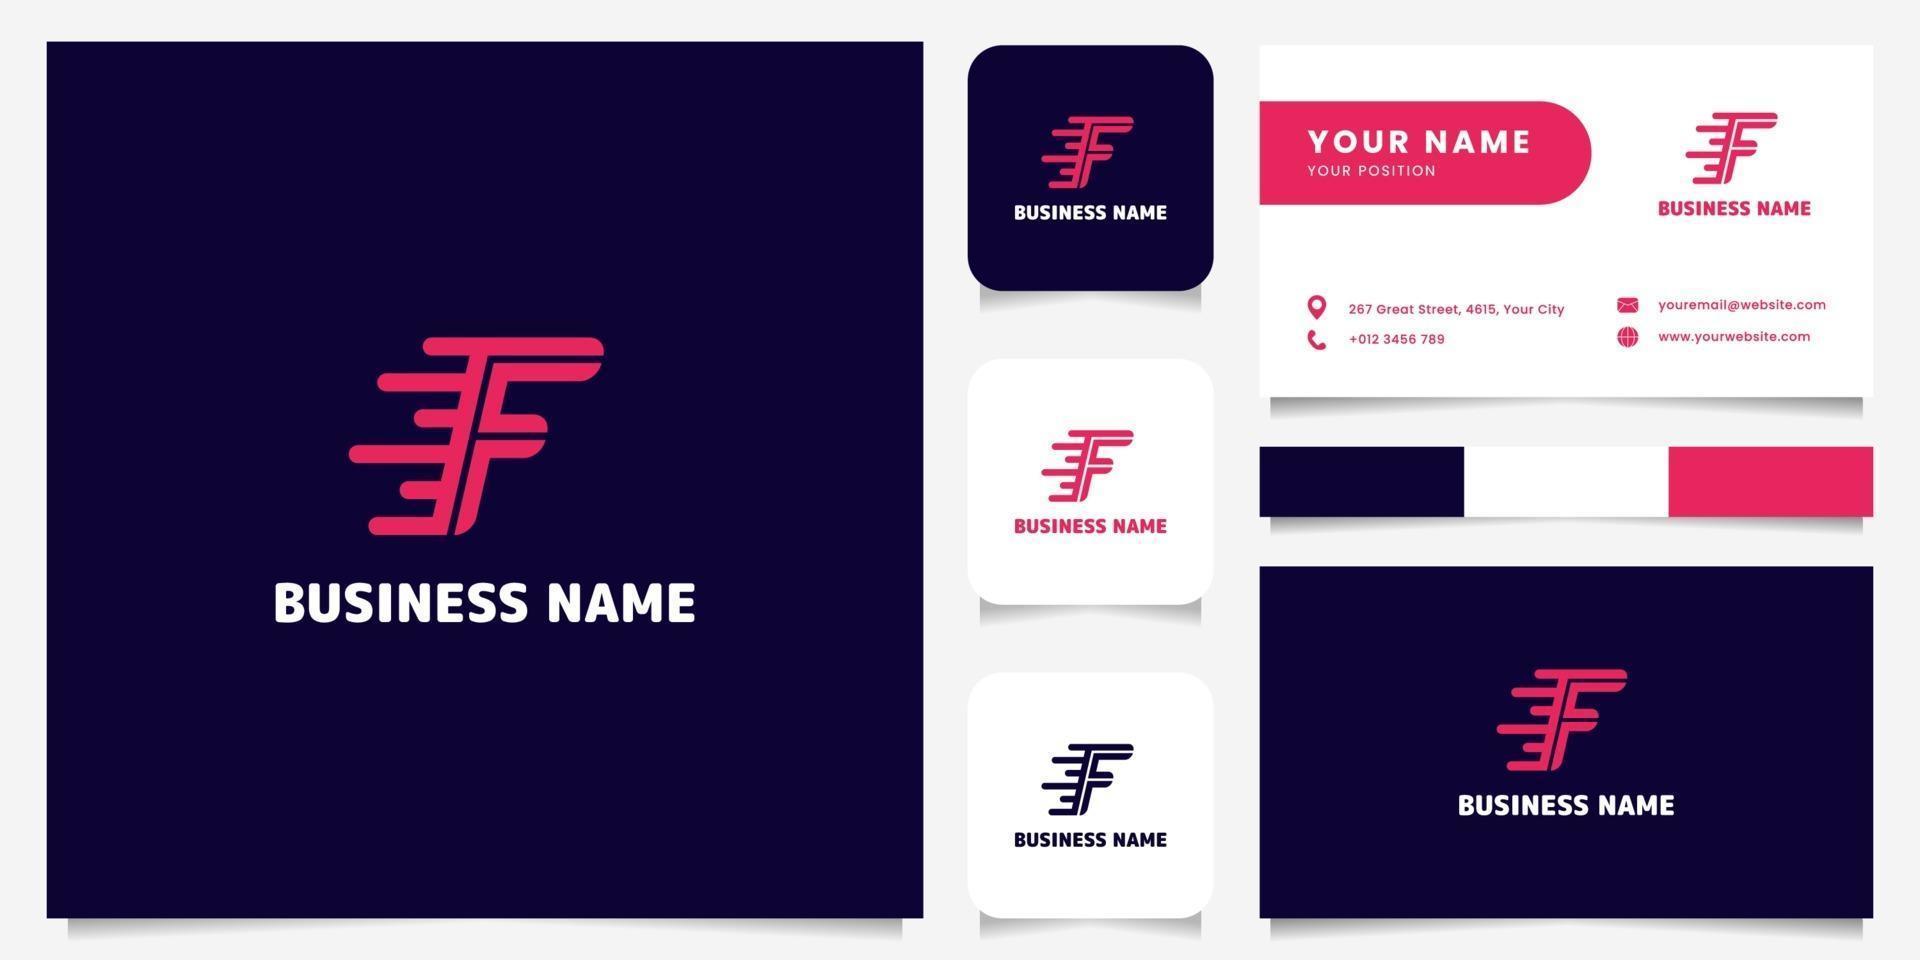 logo di velocità lettera f rosa brillante semplice e minimalista nel logo di sfondo scuro con modello di biglietto da visita vettore